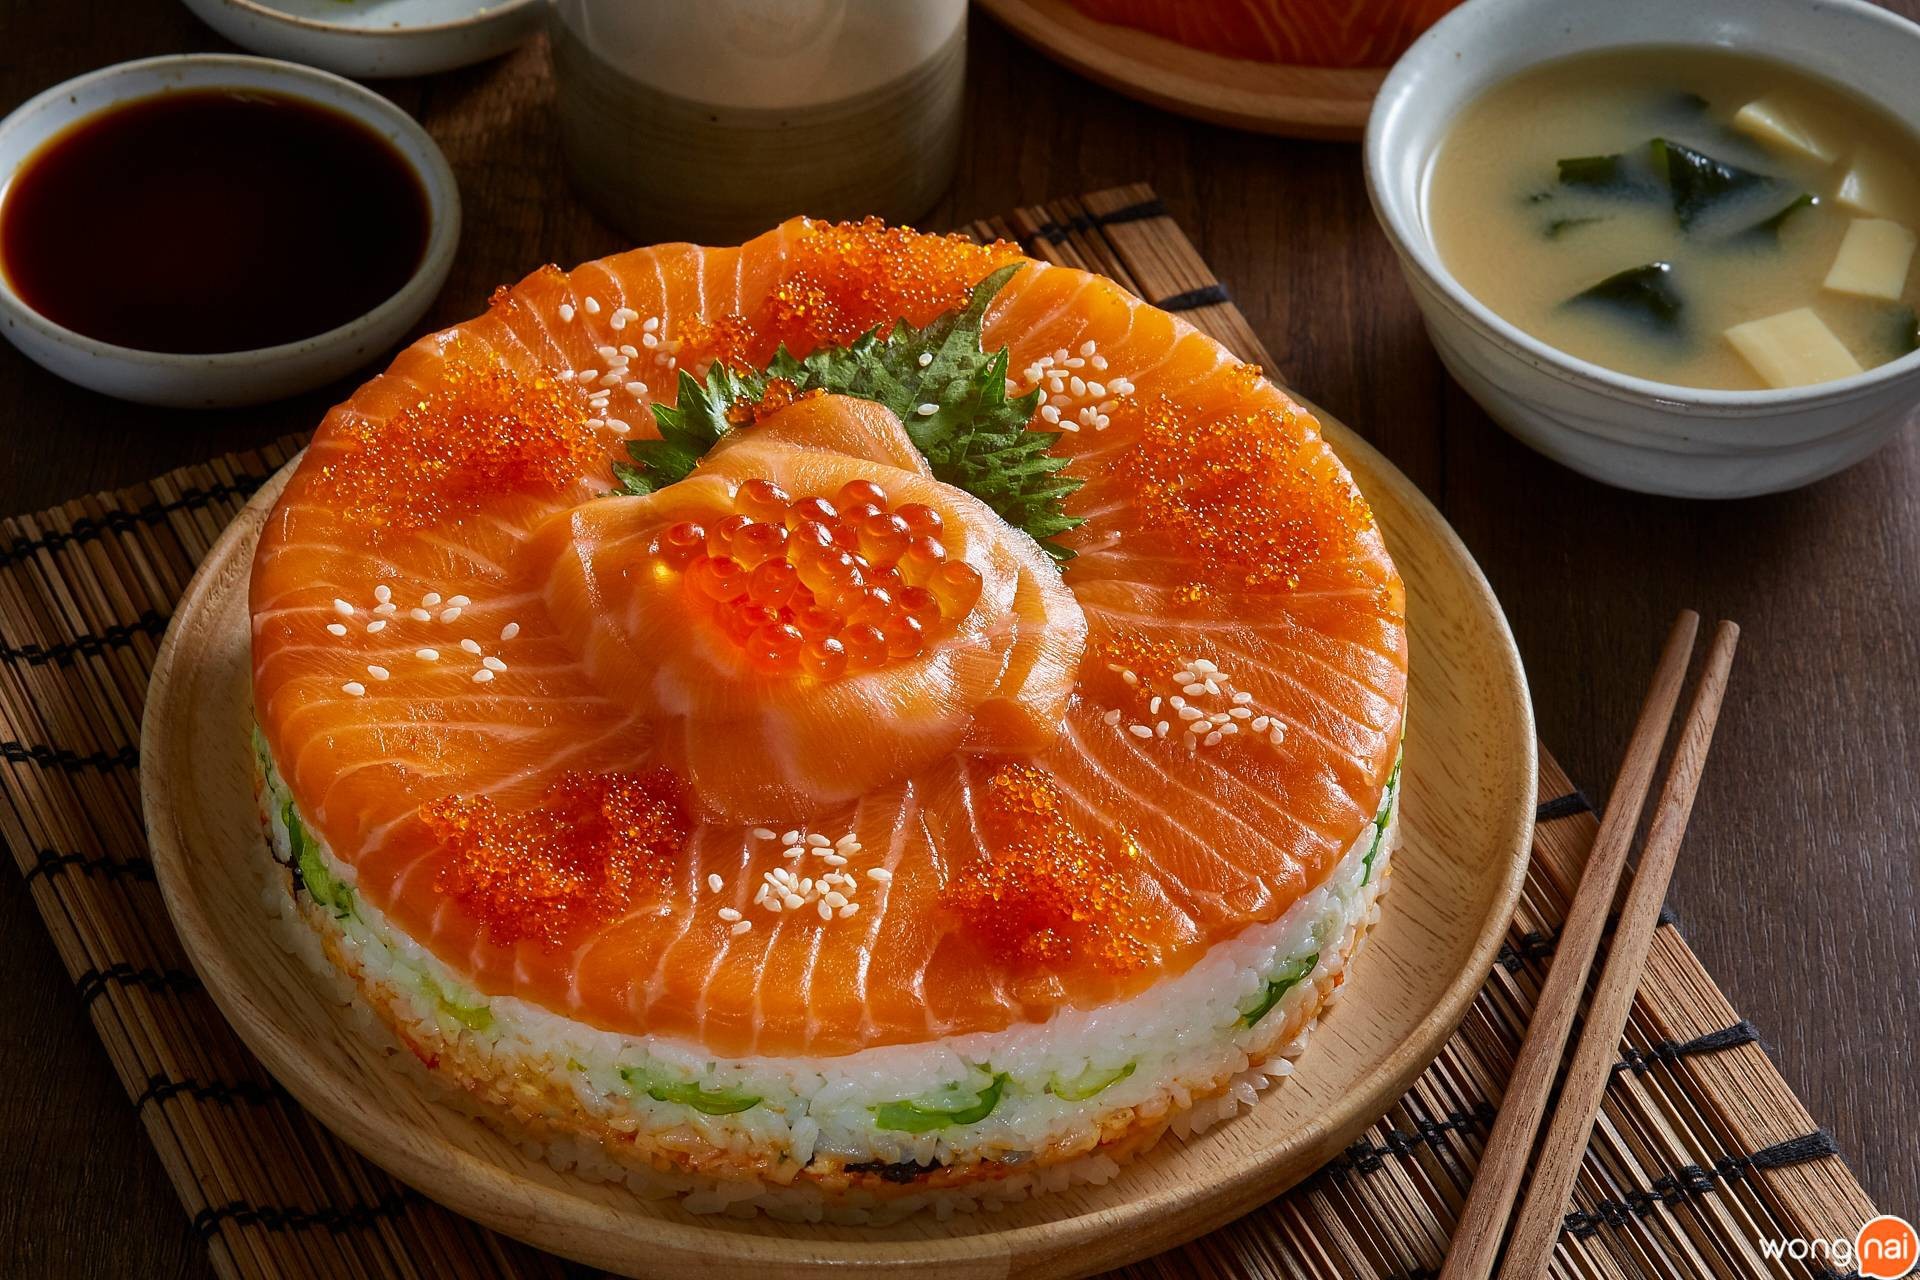 Phần Sushi vẫn được làm từ các nguyên liệu quen thuộc như cơm